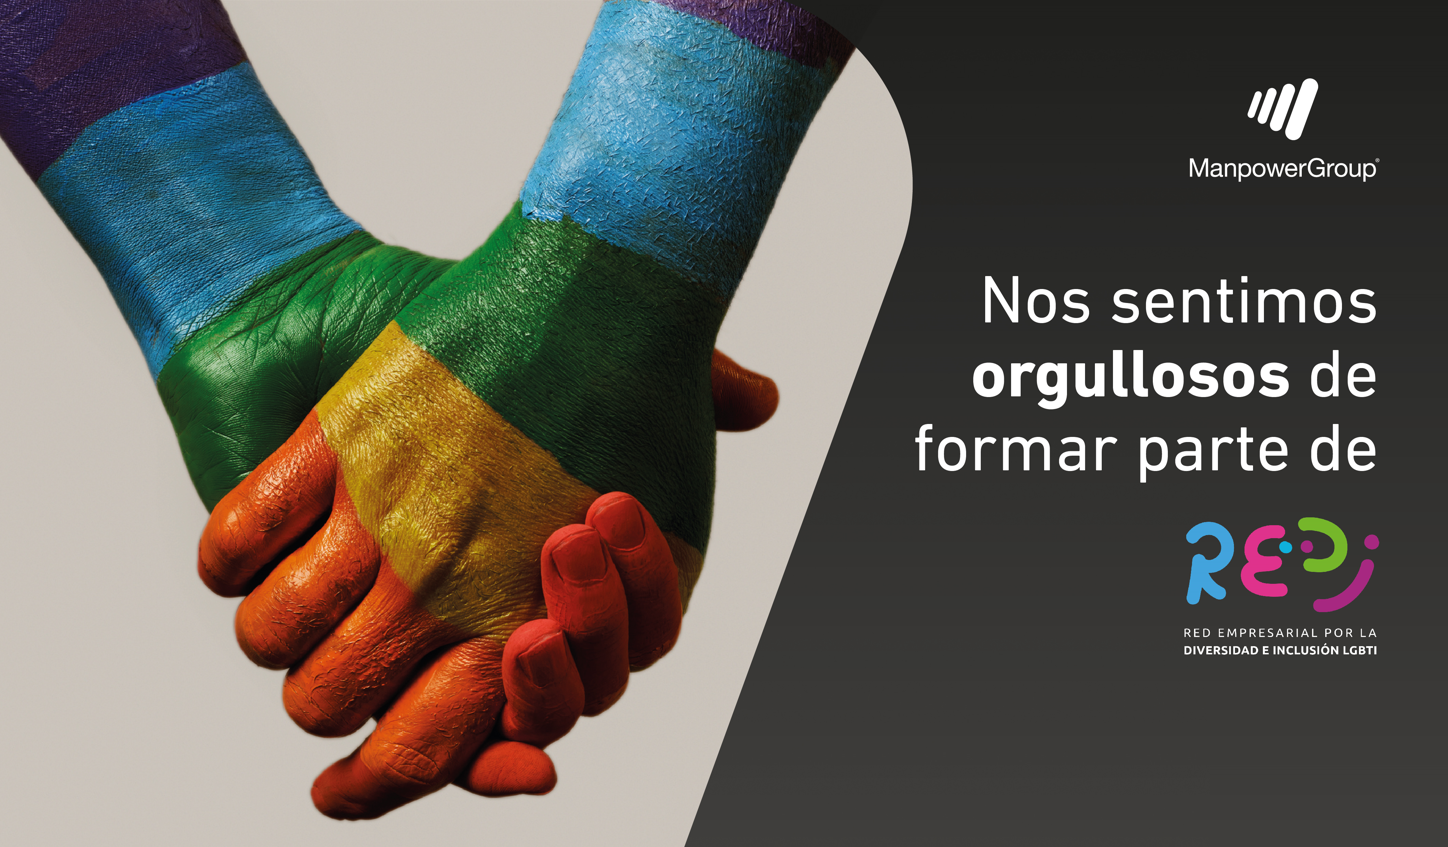 ManpowerGroup eleva su compromiso para impulsar la plena inclusión del colectivo LGTBQI+ en el mundo del empleo